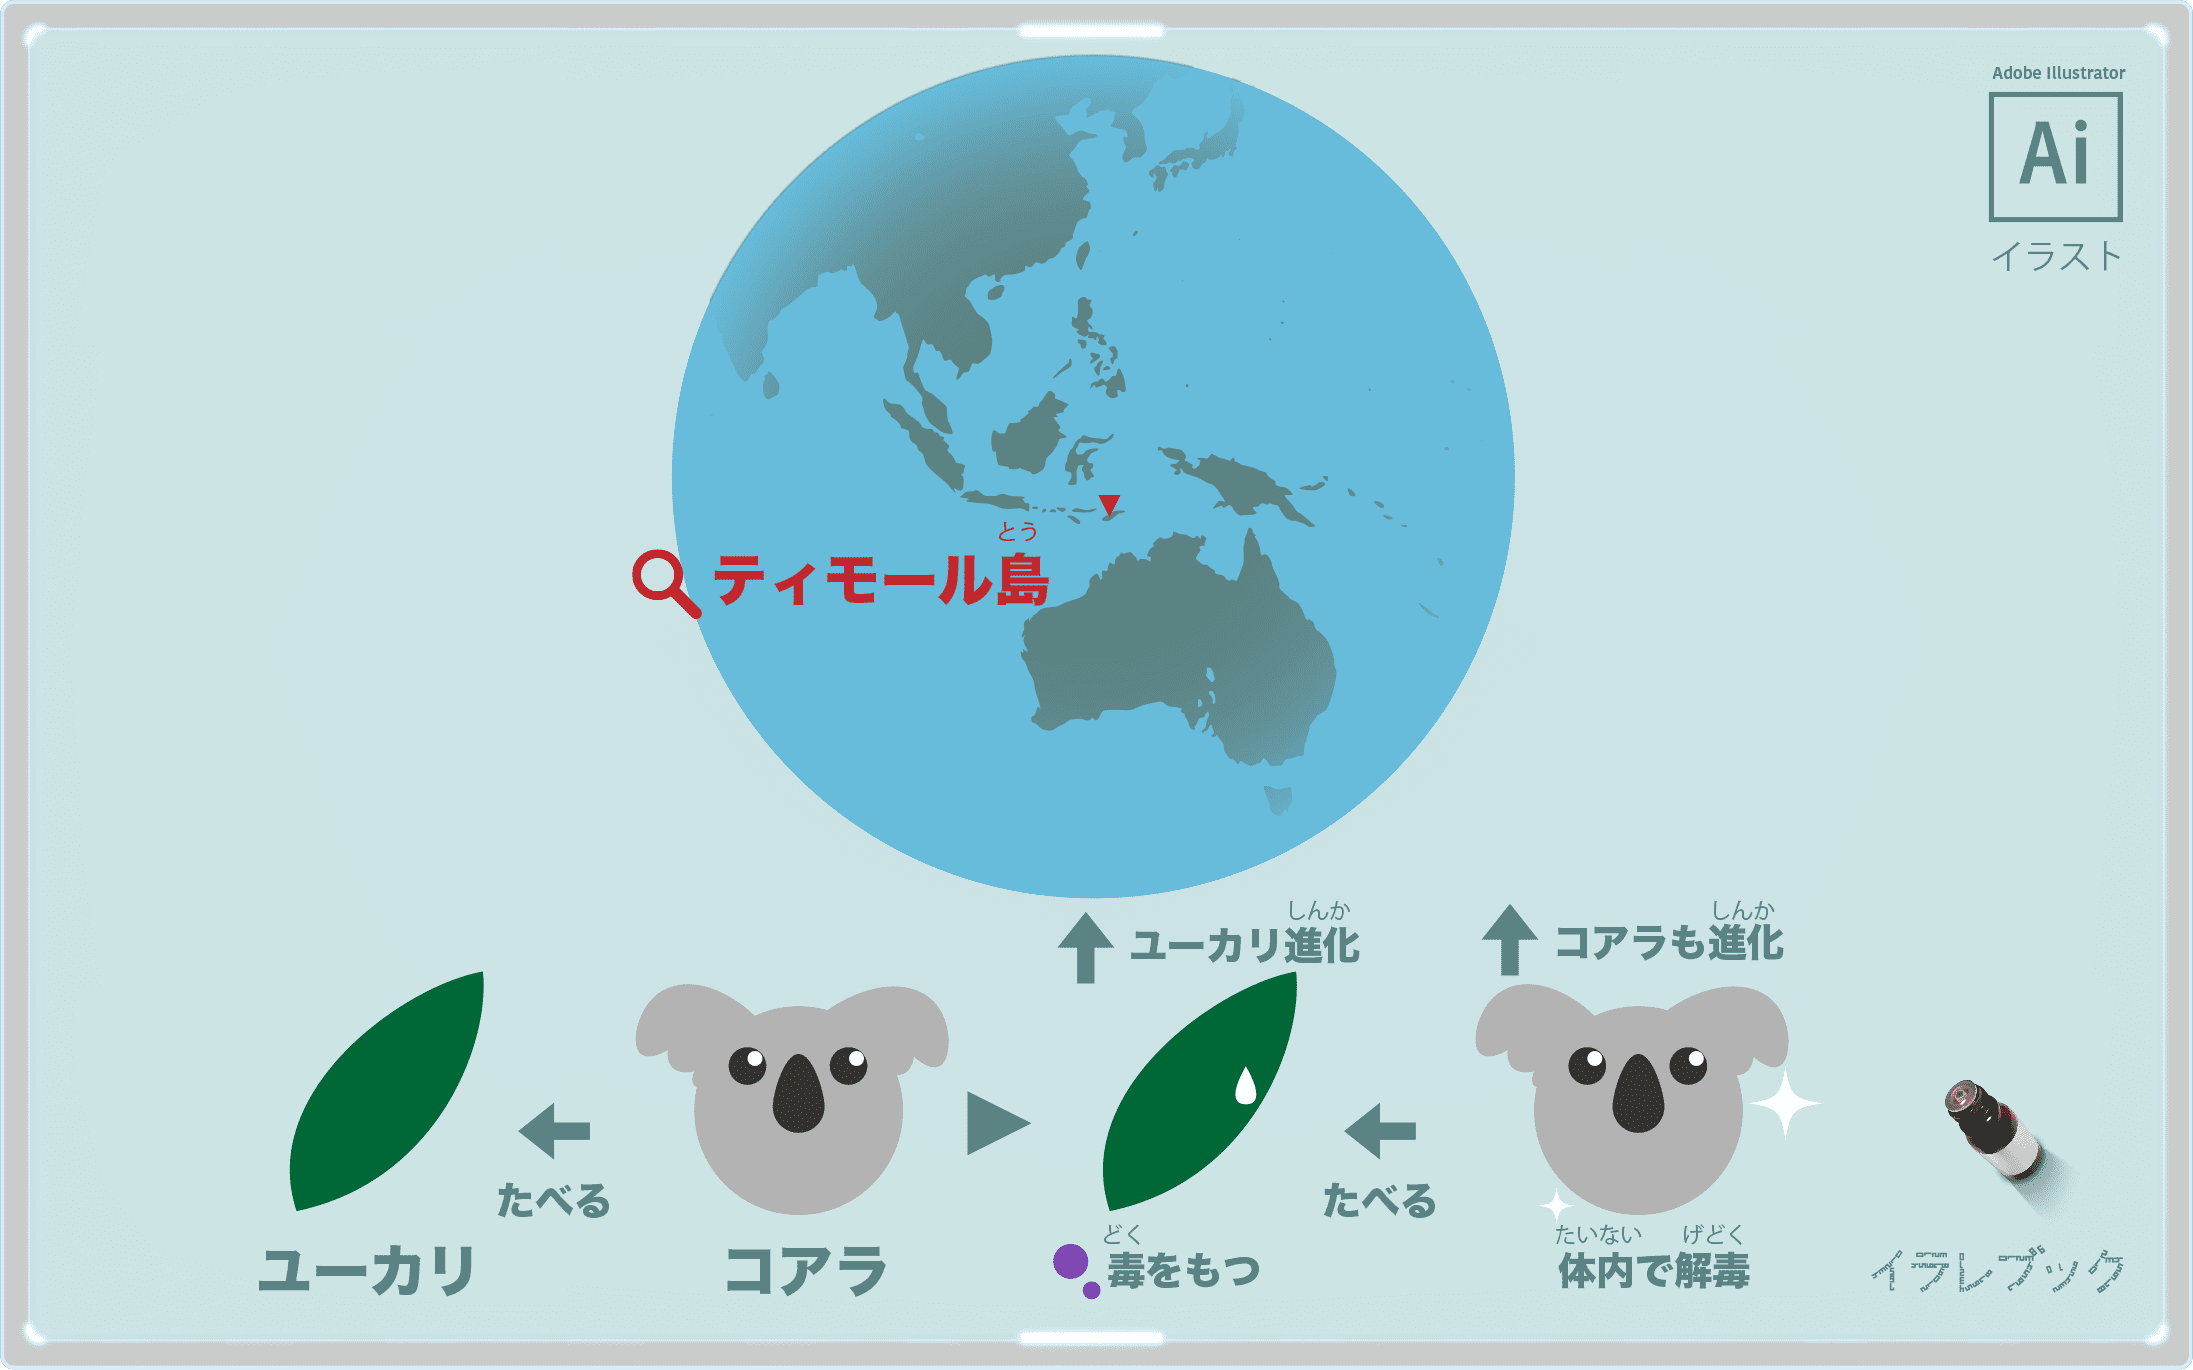 ユーカリが初めて発見されたのはティモール島。ユーカリとコアラの関係のイラスト